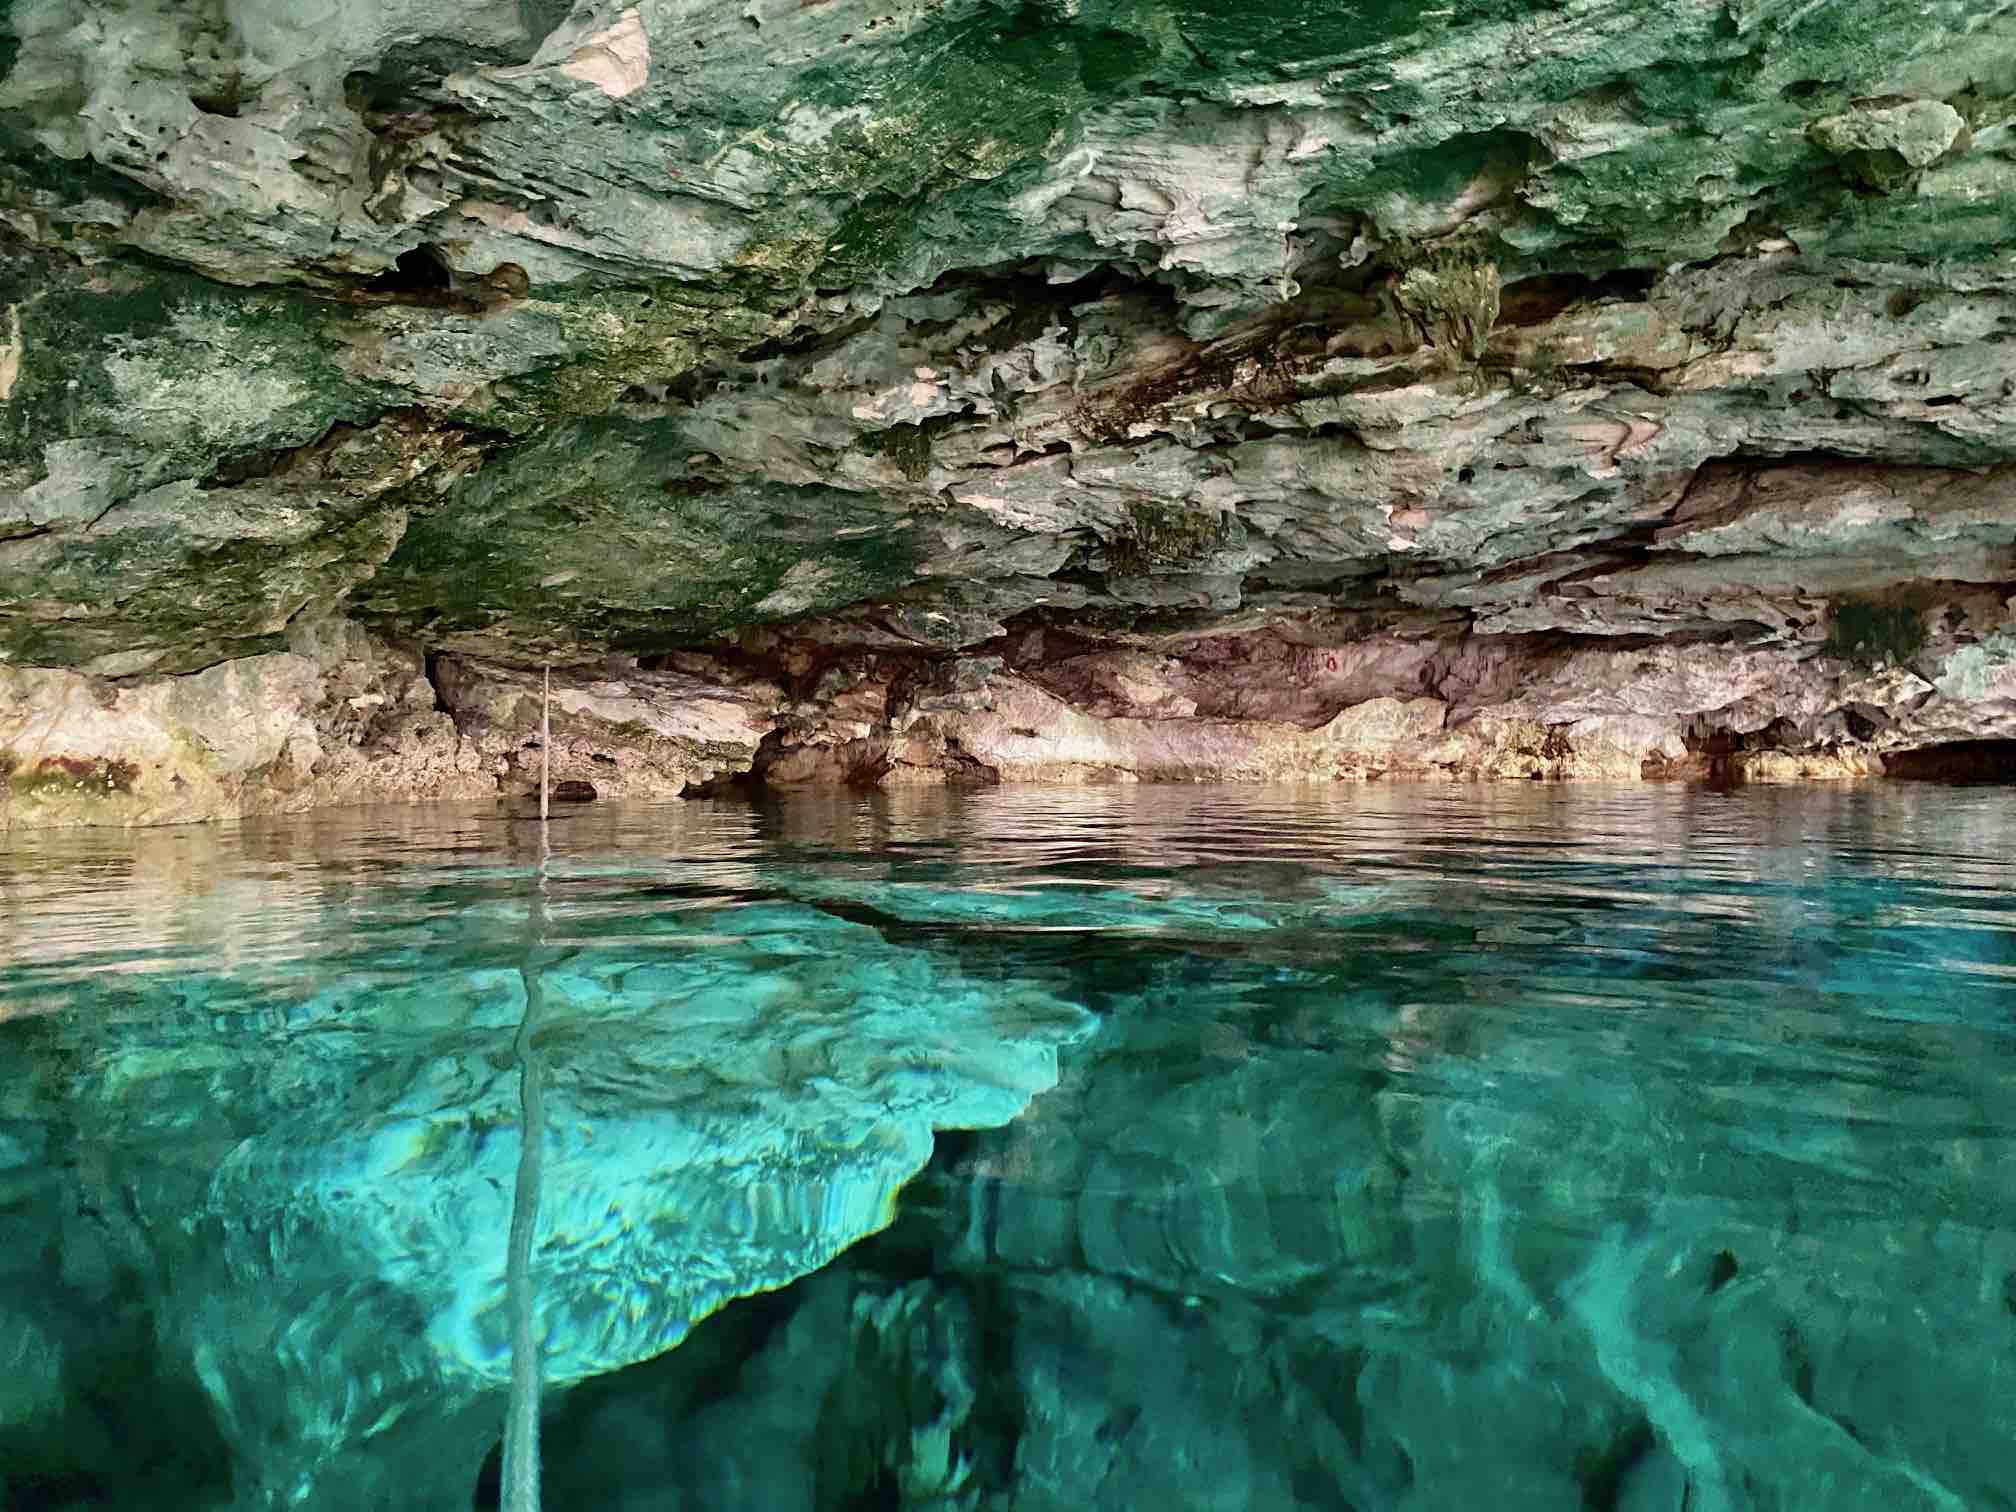 Cenote cristalinos, Playa del carmen, mexique, yucatan